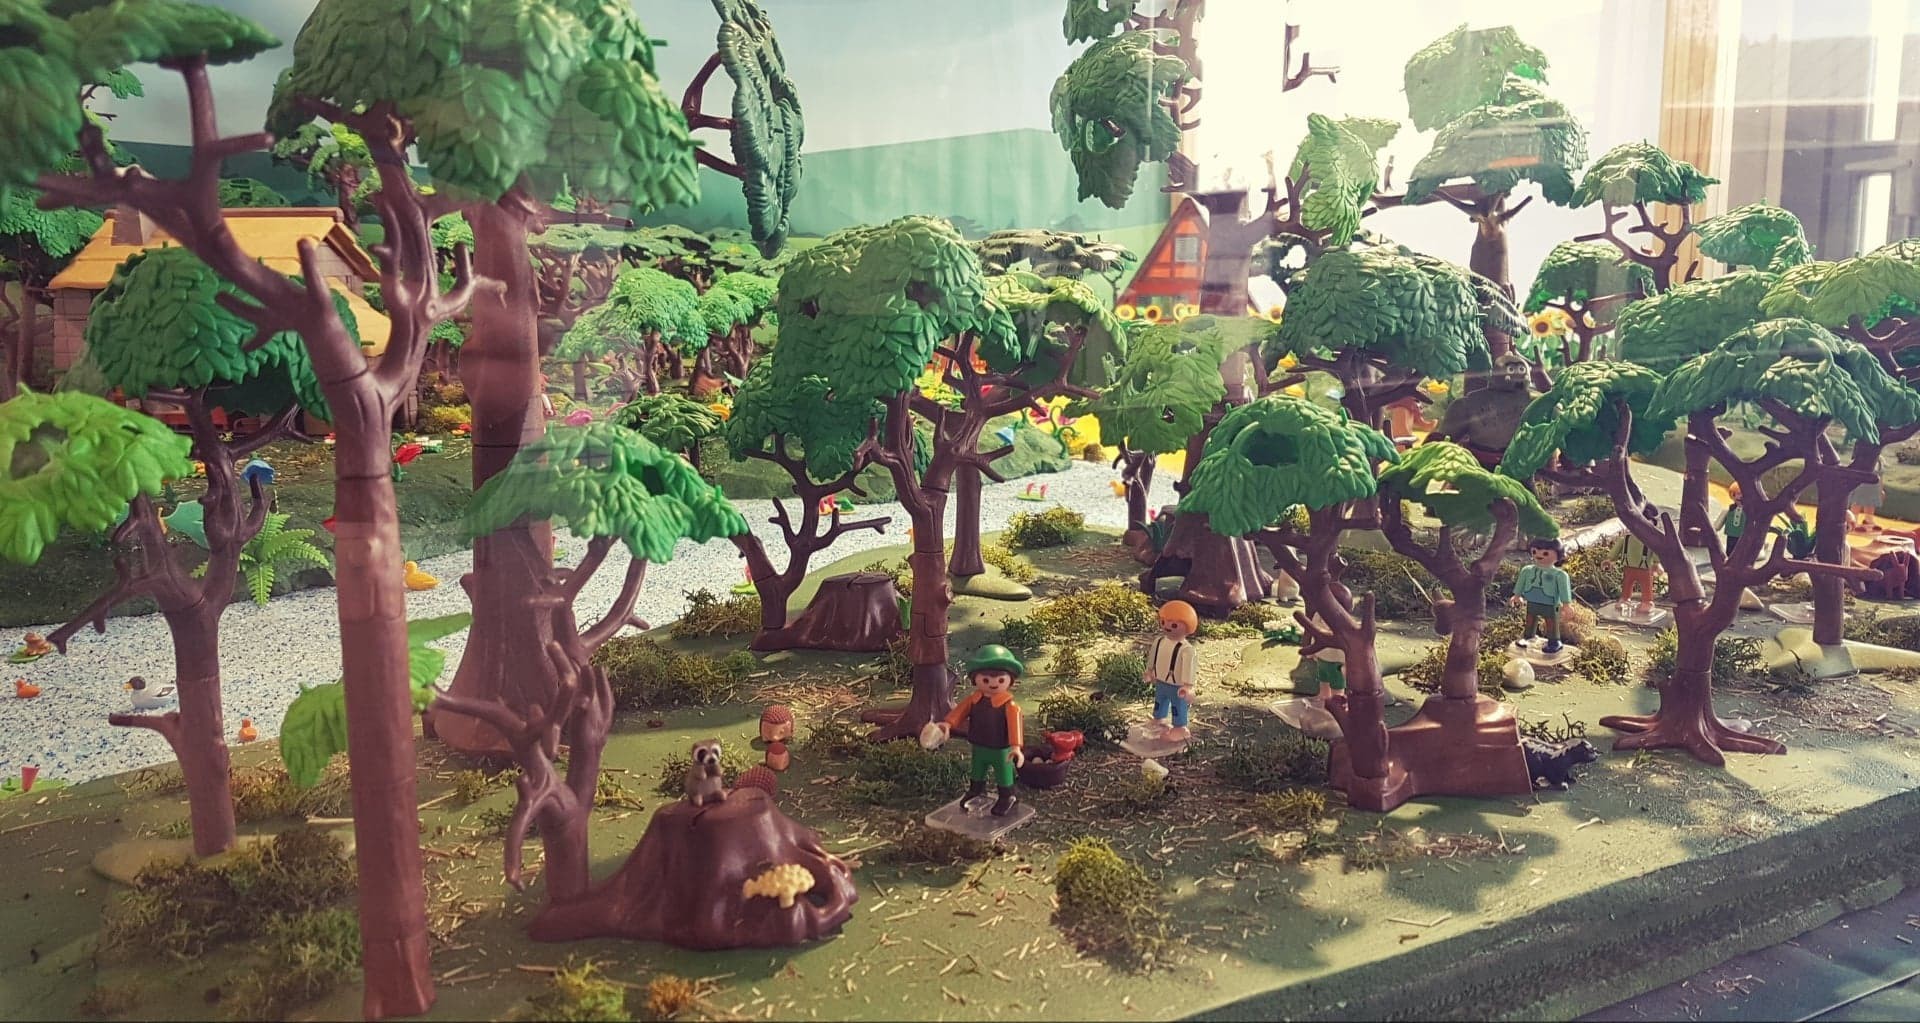 Exposition Playmobil au Jardin Botanique de Nancy